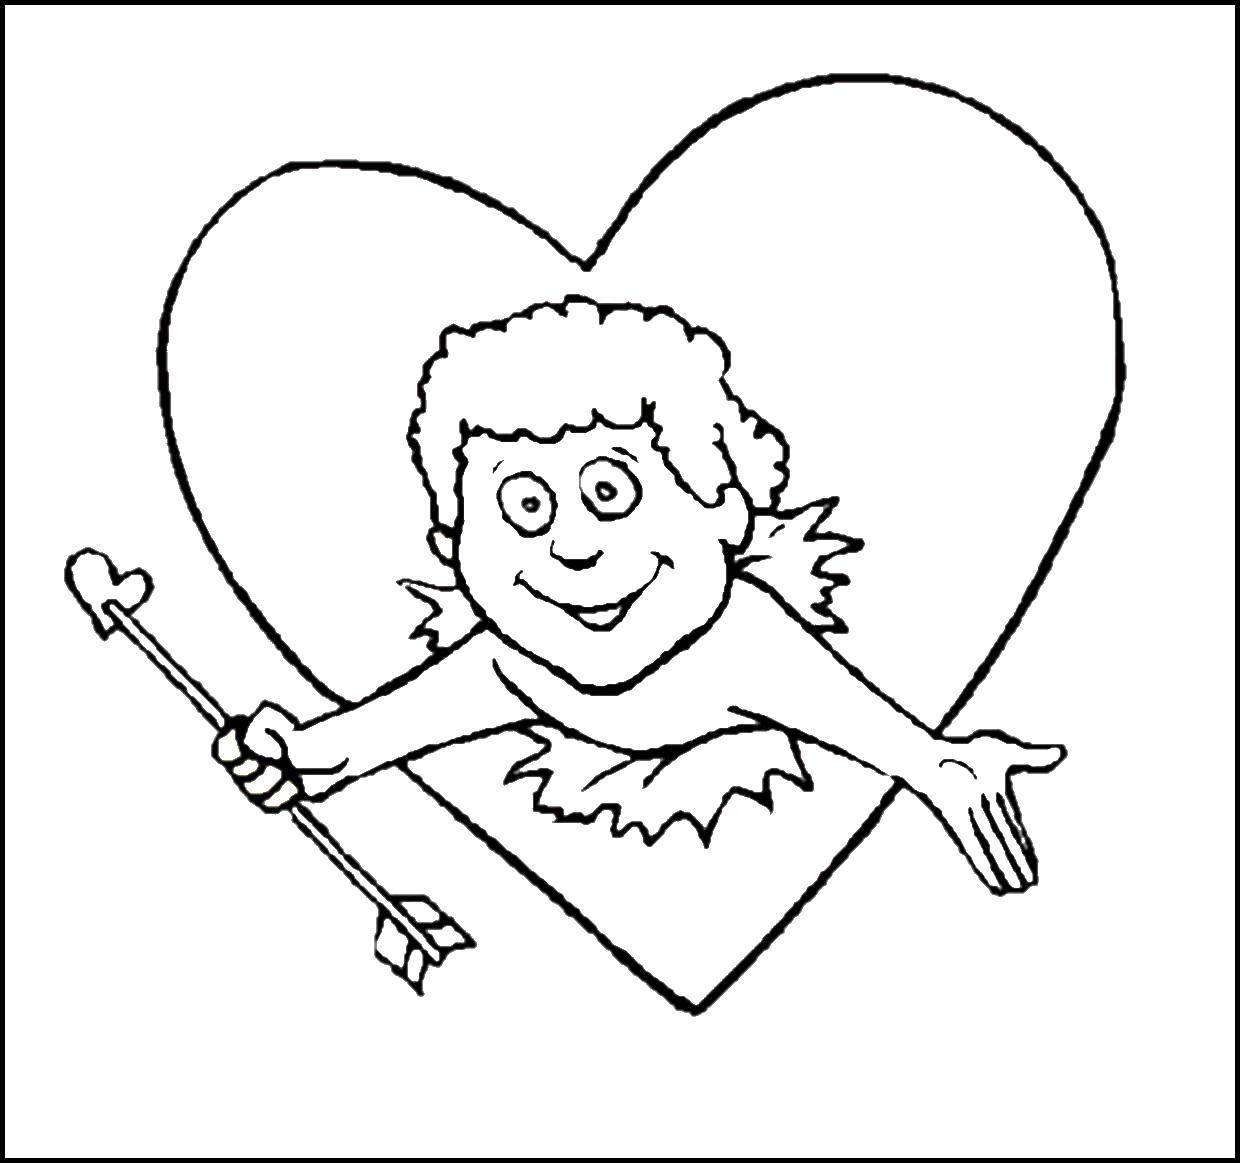 Название: Раскраска Купидон  с сердечком. Категория: день святого валентина. Теги: День Святого Валентина, любовь, купидон.